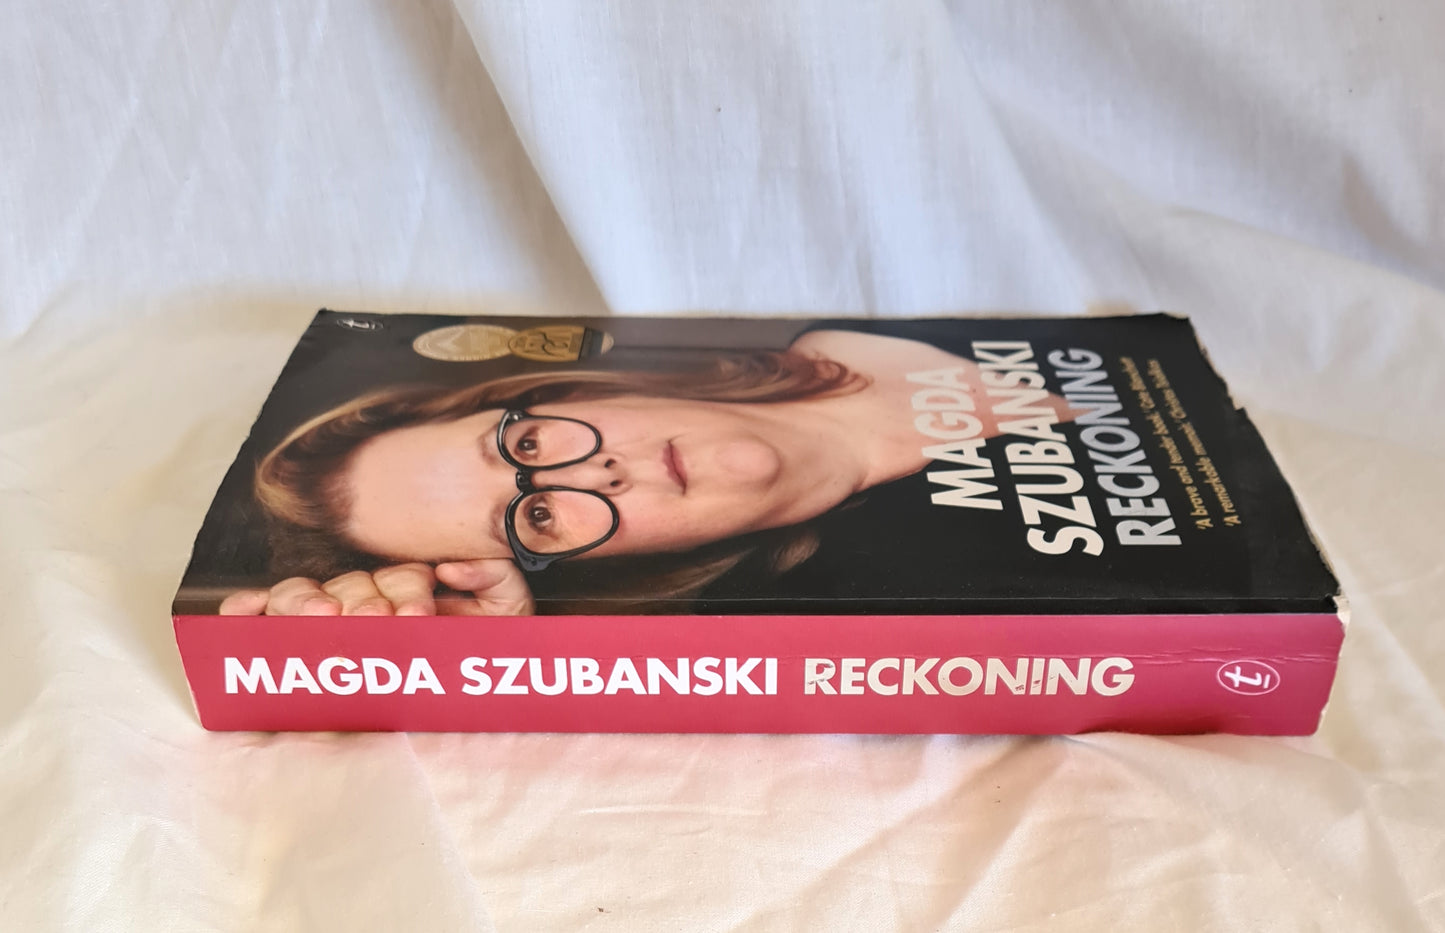 Reckoning by Magda Szubanski